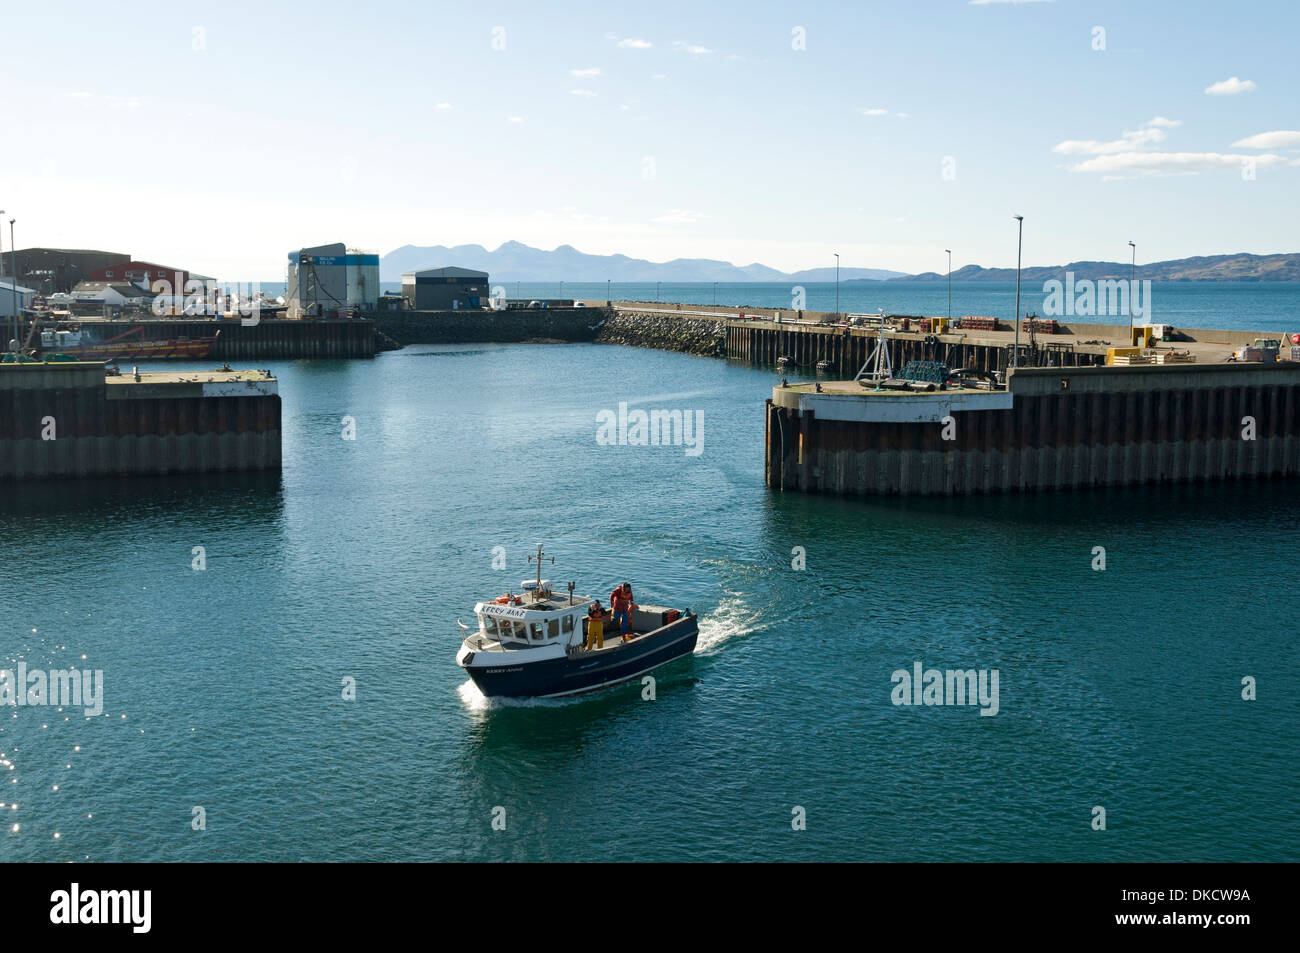 Le port de Mallaig Armadale (Skye) le ferry, région des Highlands, Ecosse, Royaume-Uni. L'île de Rum dans la distance. Banque D'Images